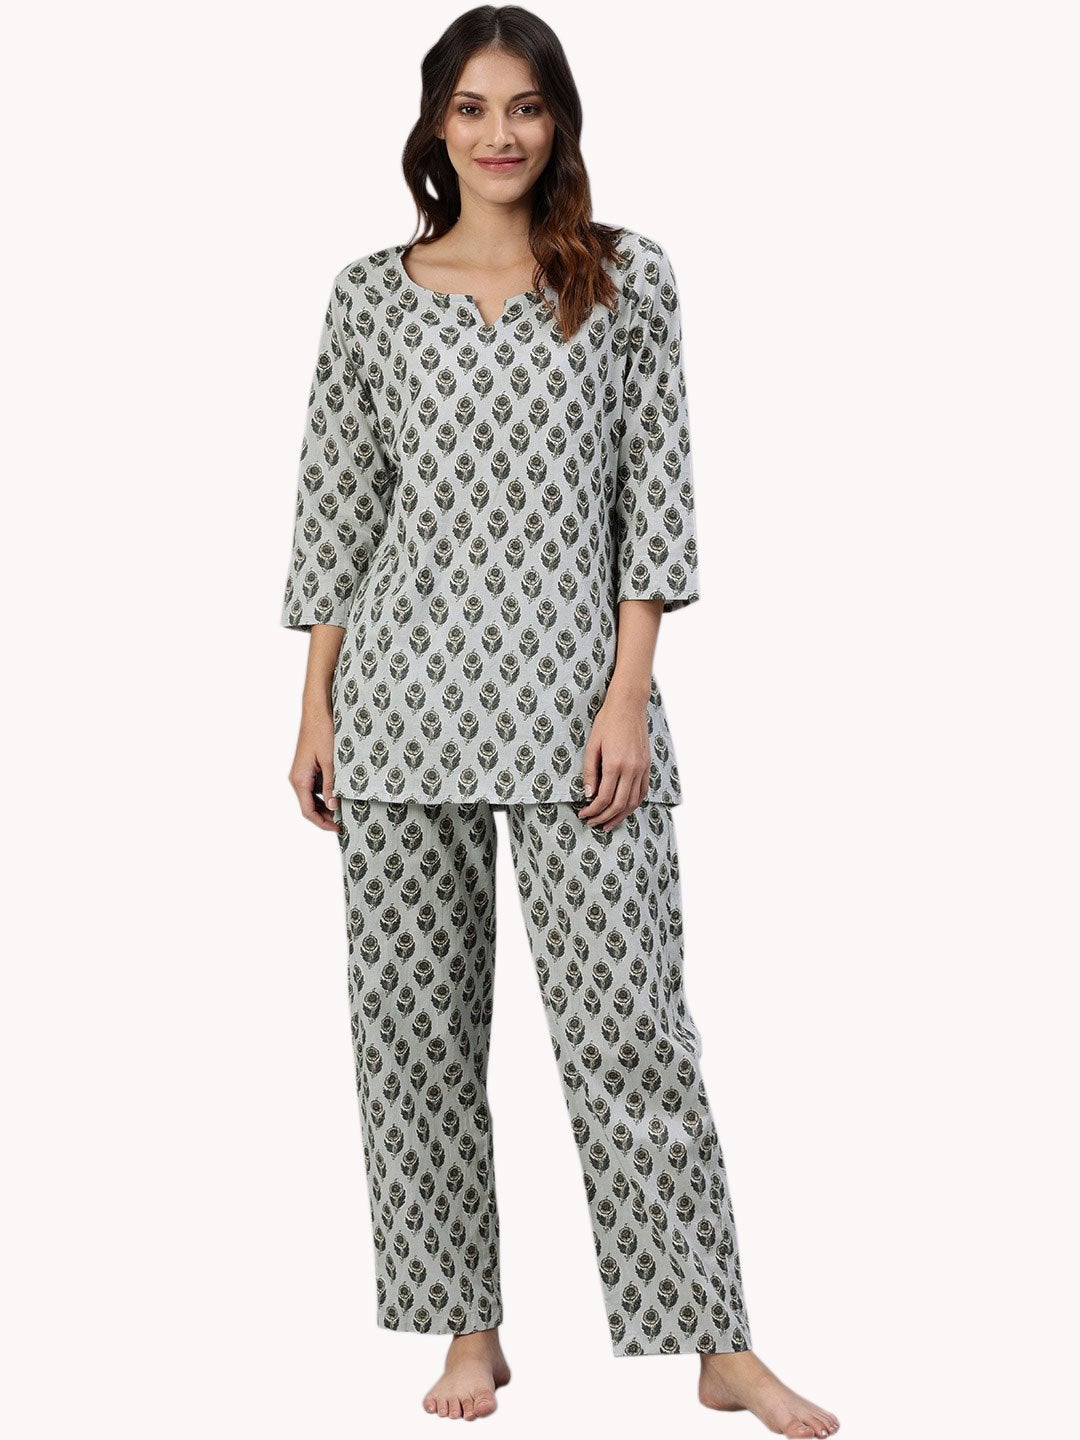 Women's Grey Color Cotton Loungewear/Nightwear - Divena